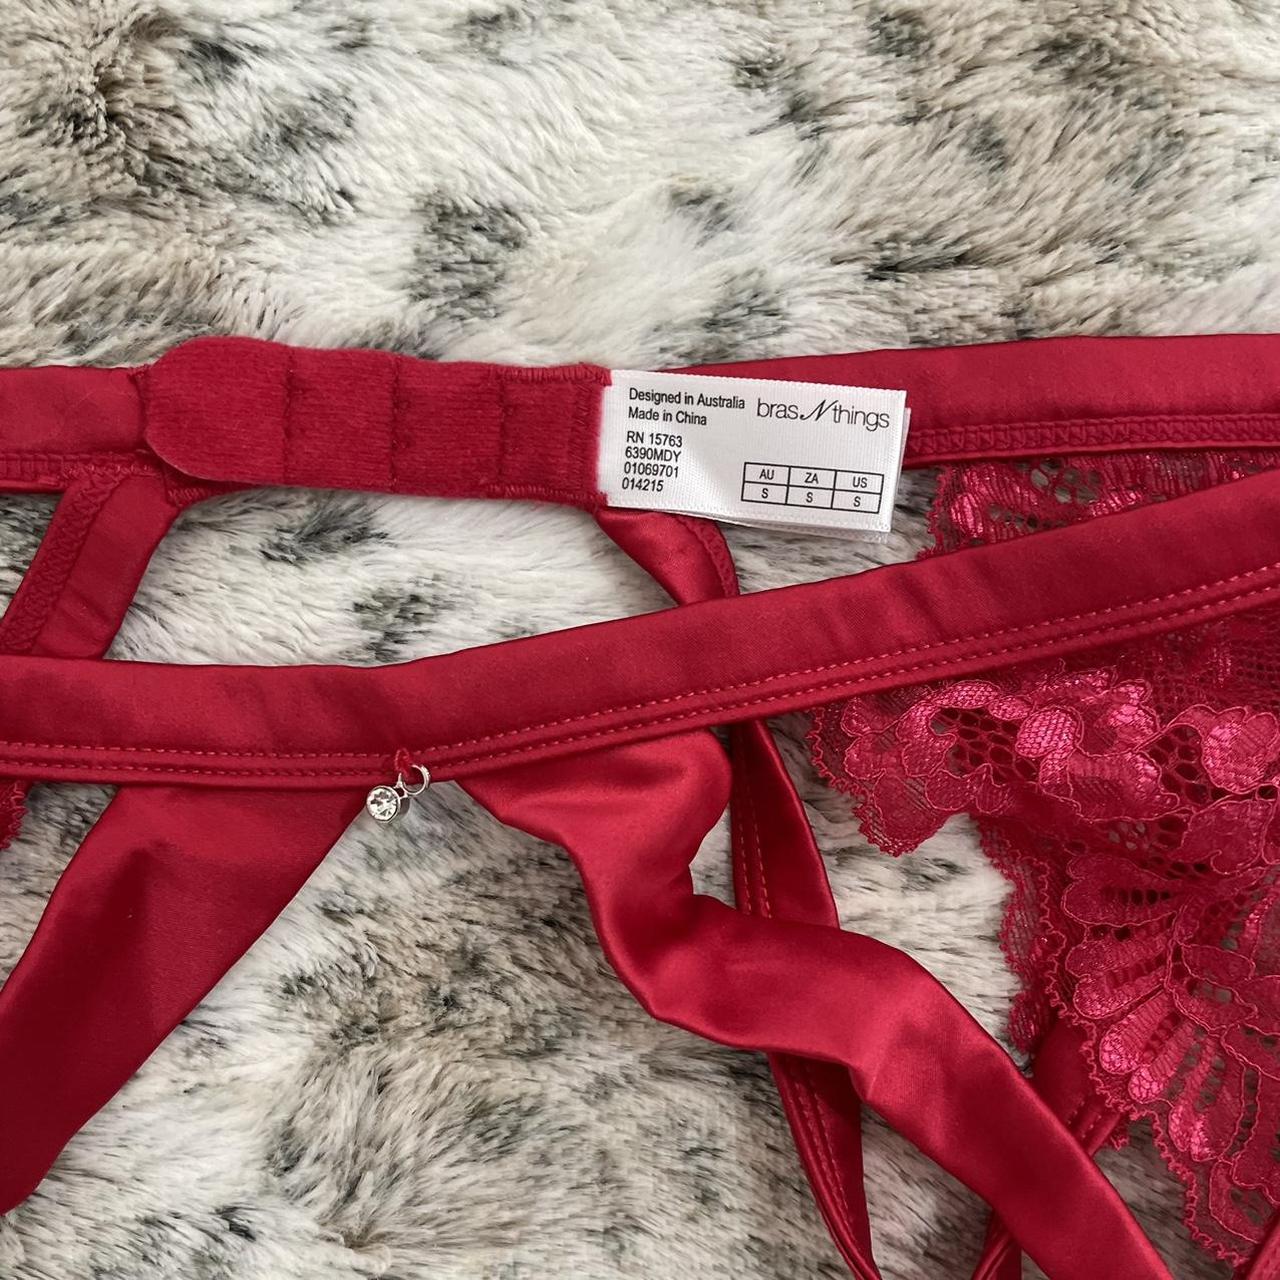 BRAS N THINGS red bra & suspenders set ♡ both... - Depop